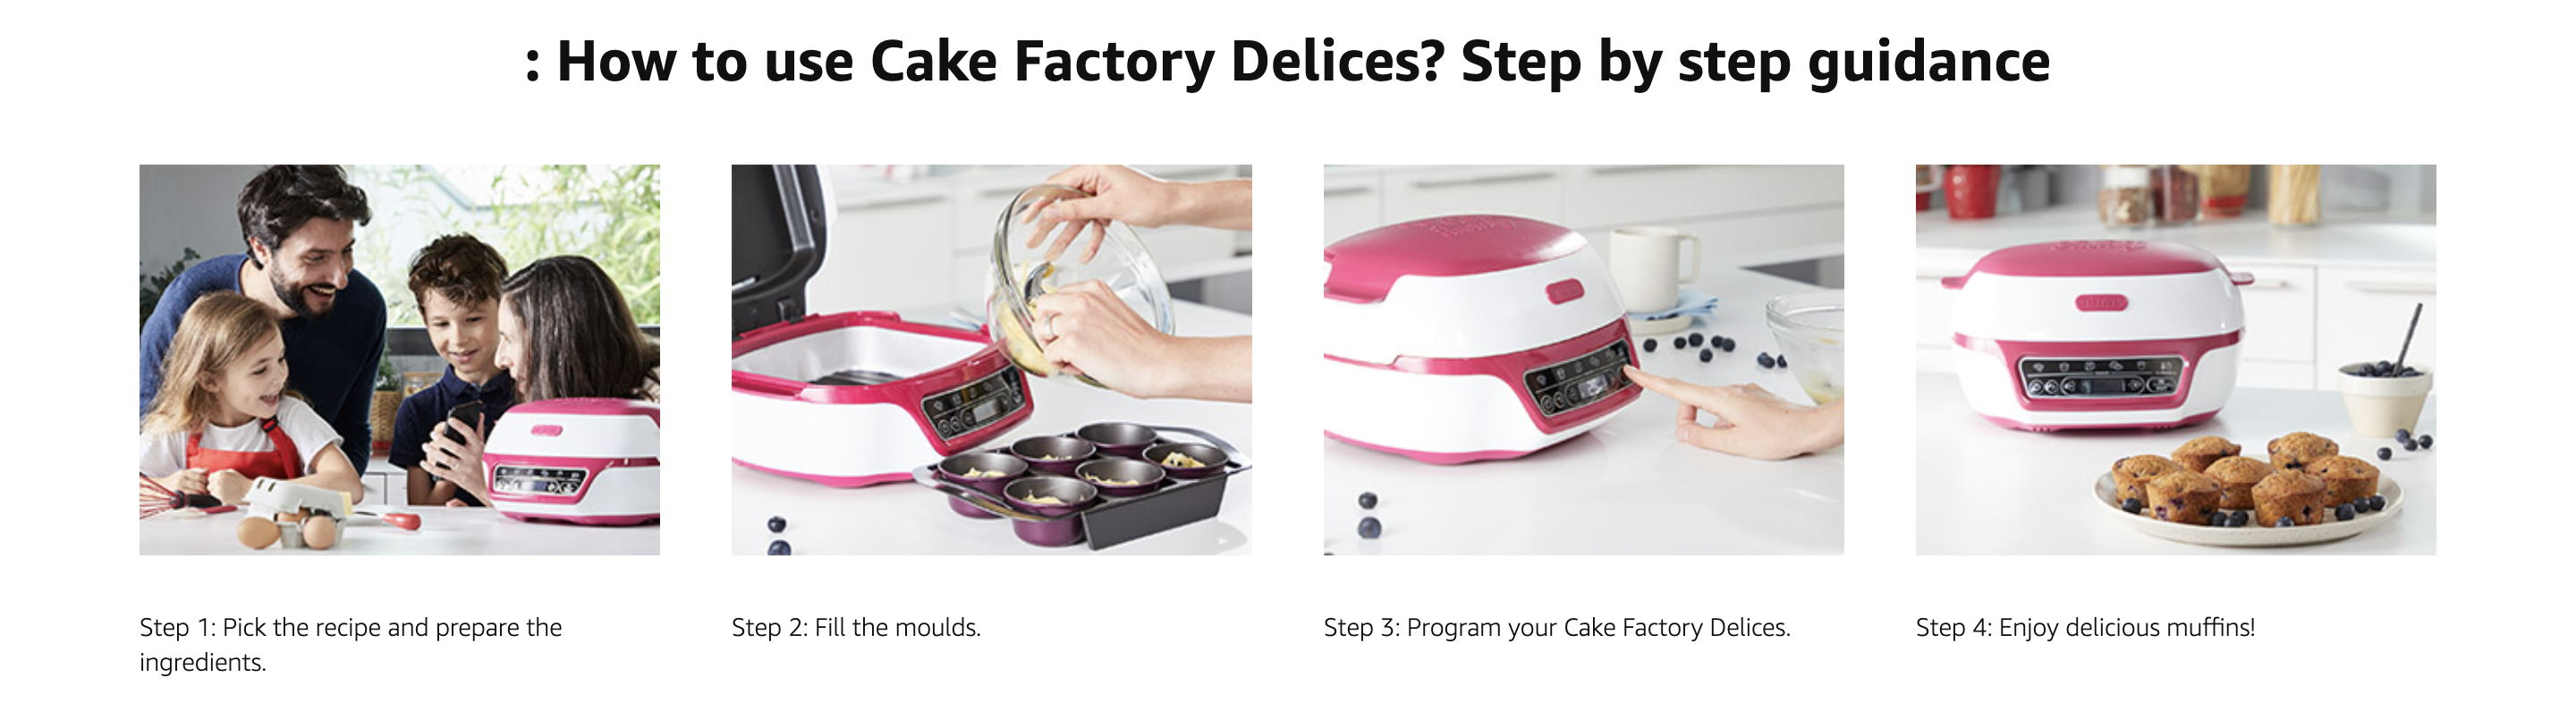 TEFAL Tefal Cake Factory Délices KD810140 Precision dessert maker